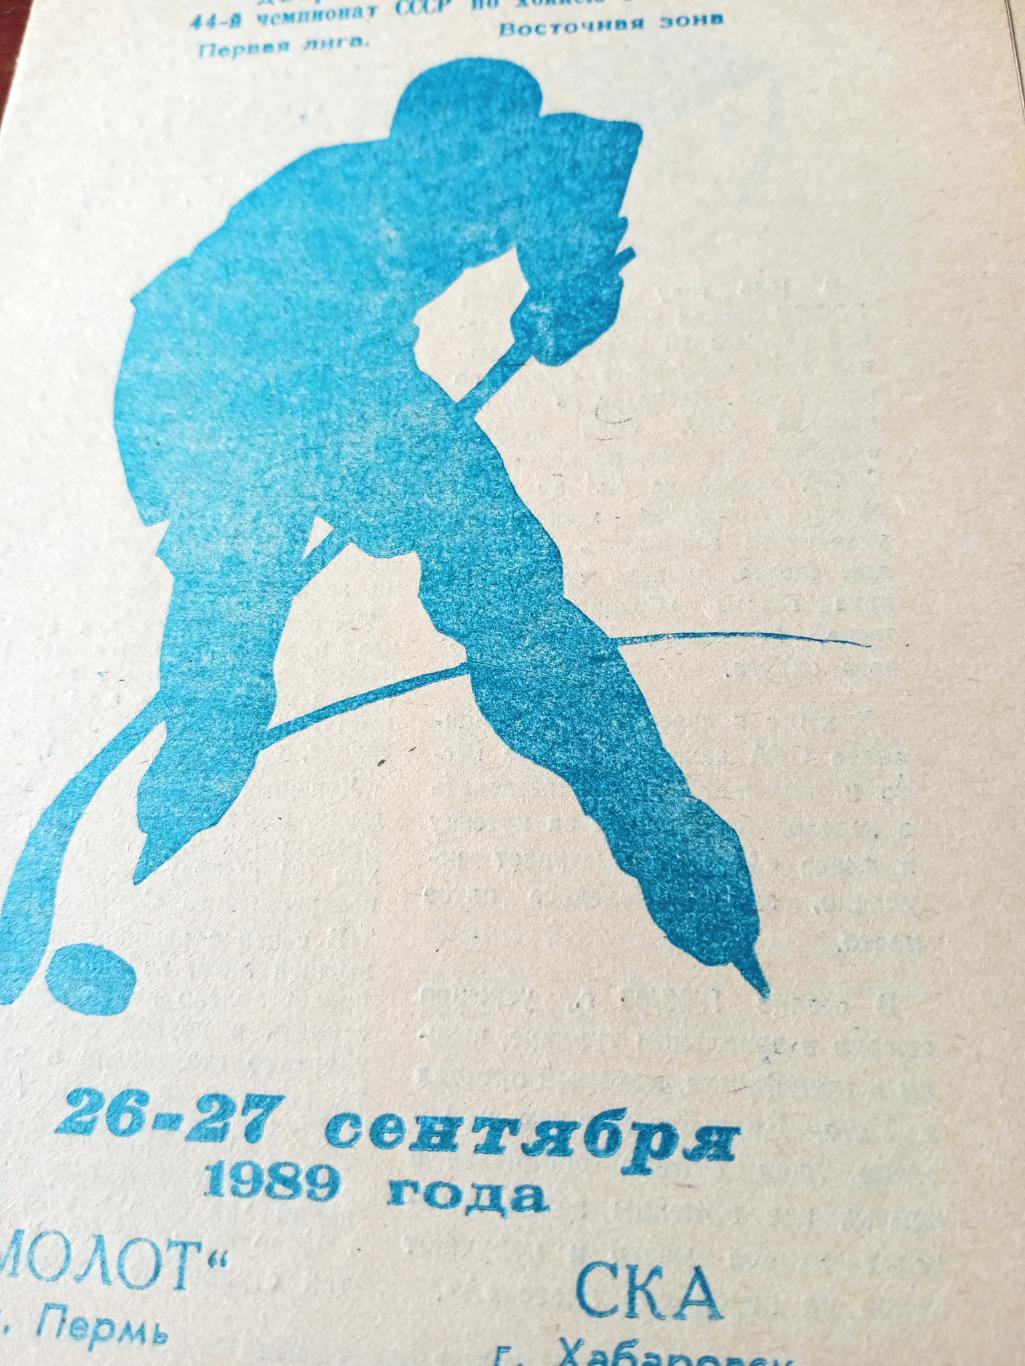 Молот Пермь - СКА Хабаровск. 26 и 27 сентября 1989 год